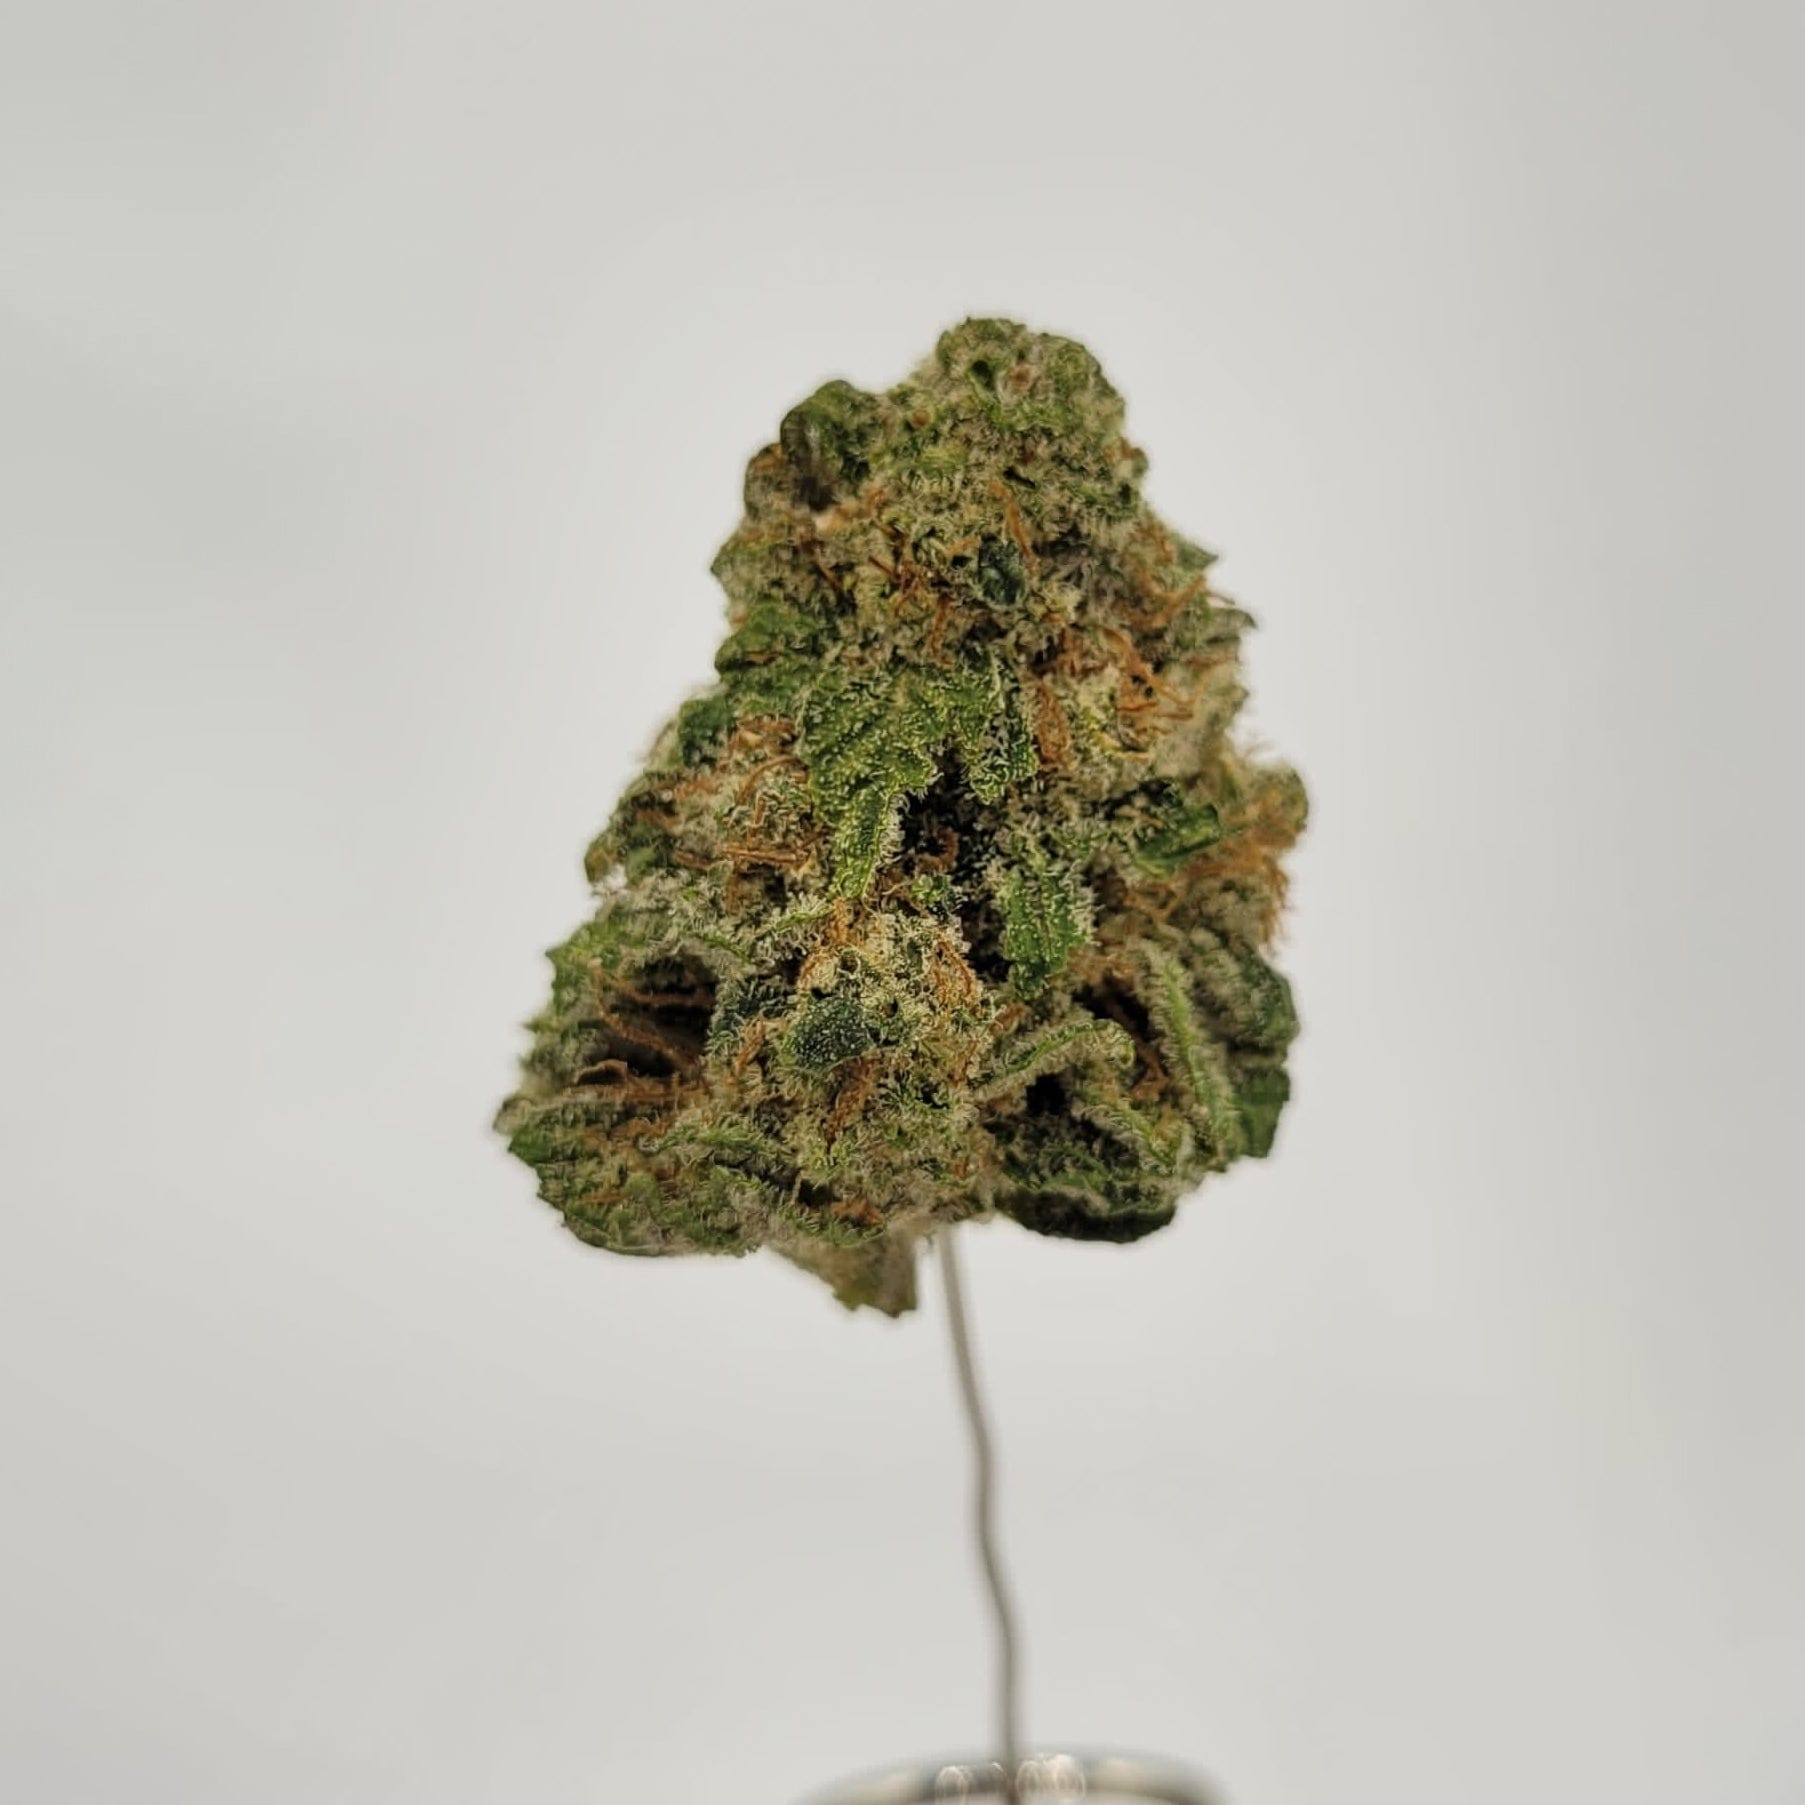 Western Cannabis Flower